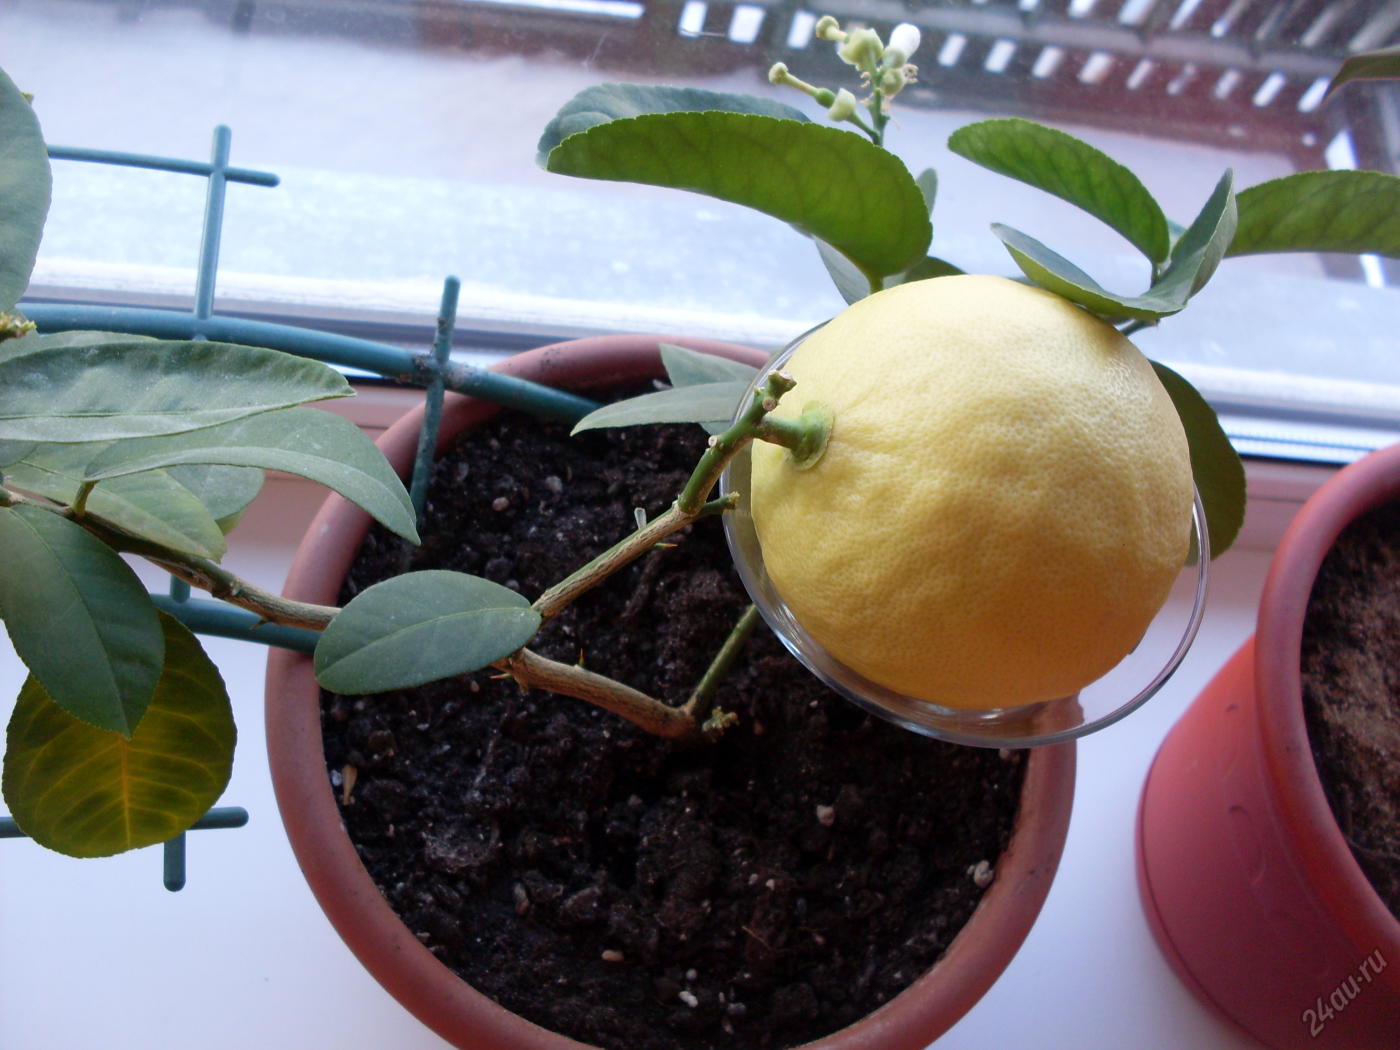 Как посадить лимон — пошаговая инструкция